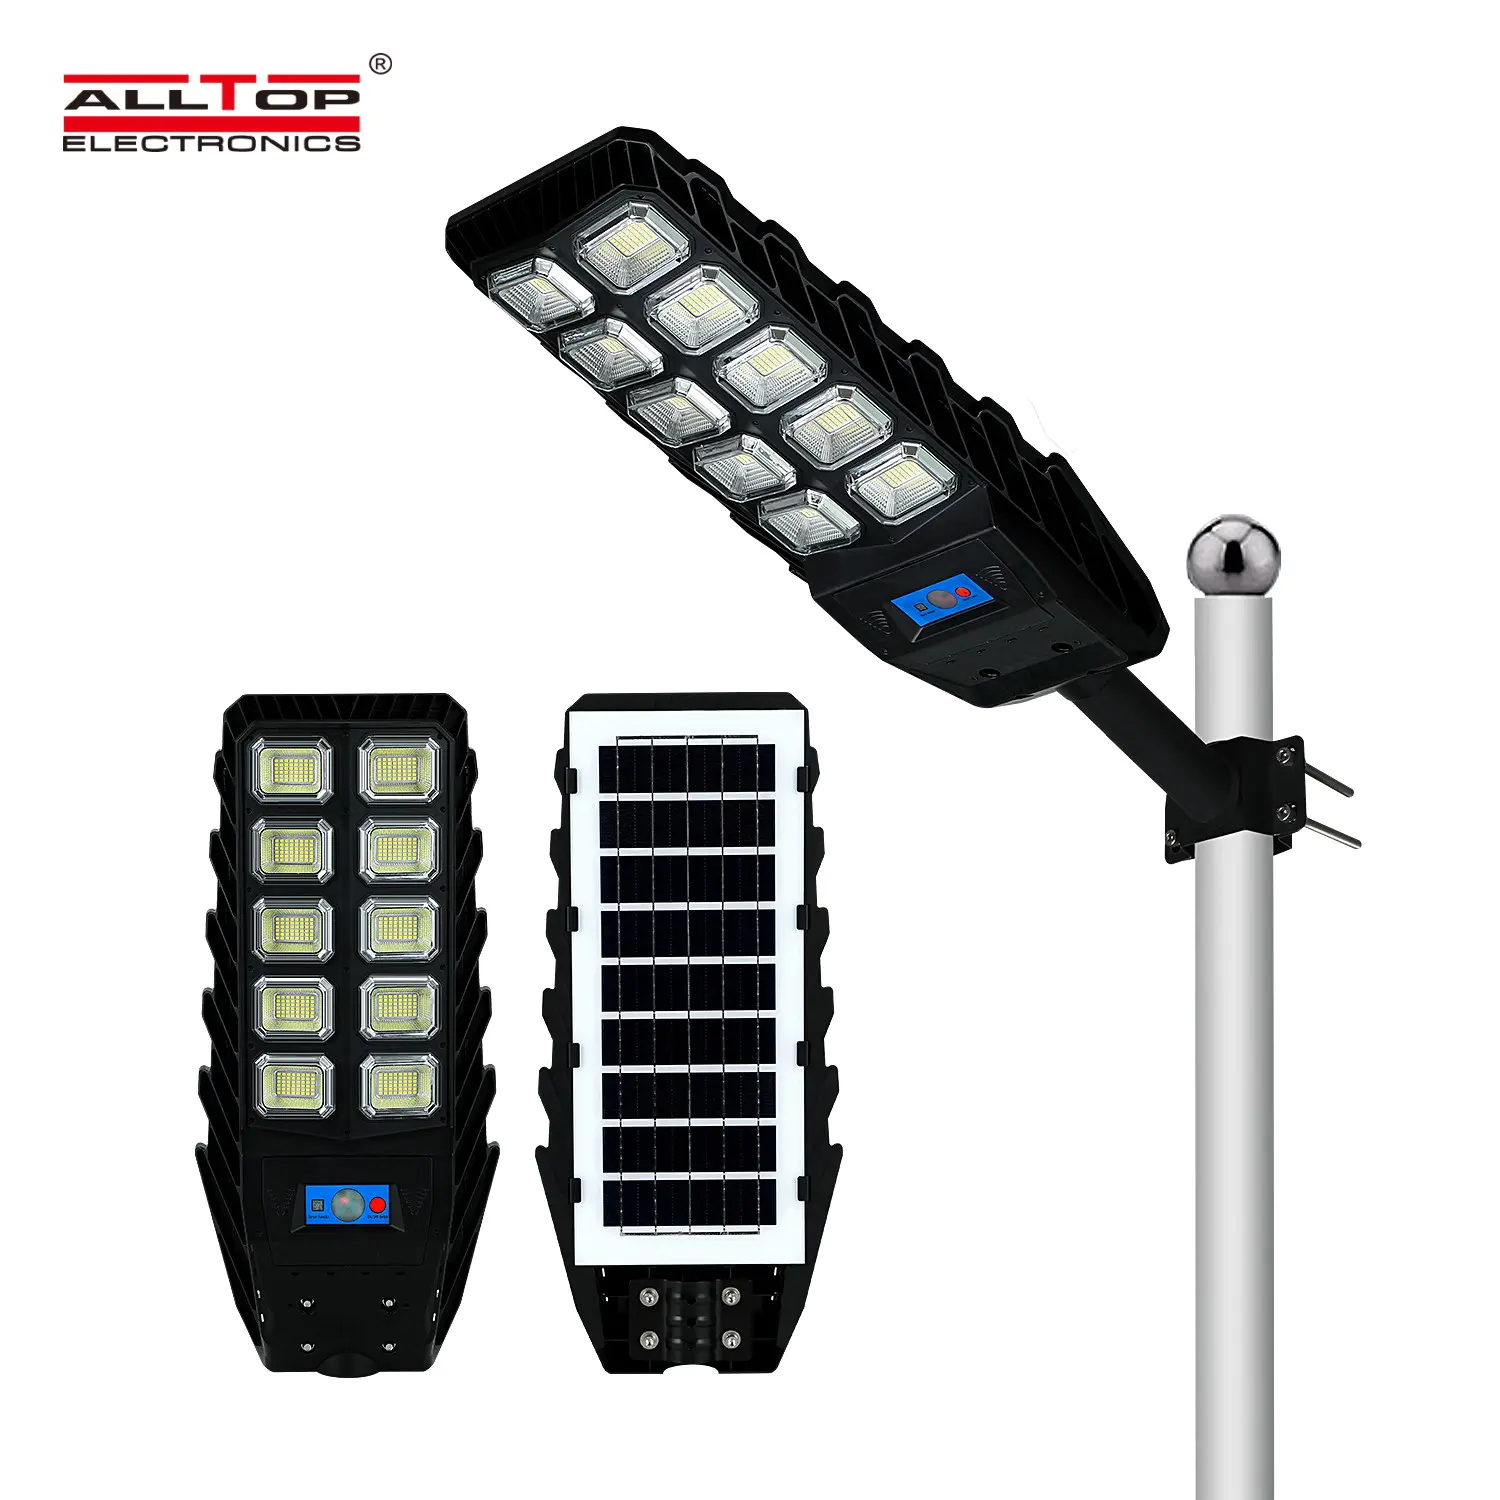 ALLTOP Top Selling integrated solar street light supplier